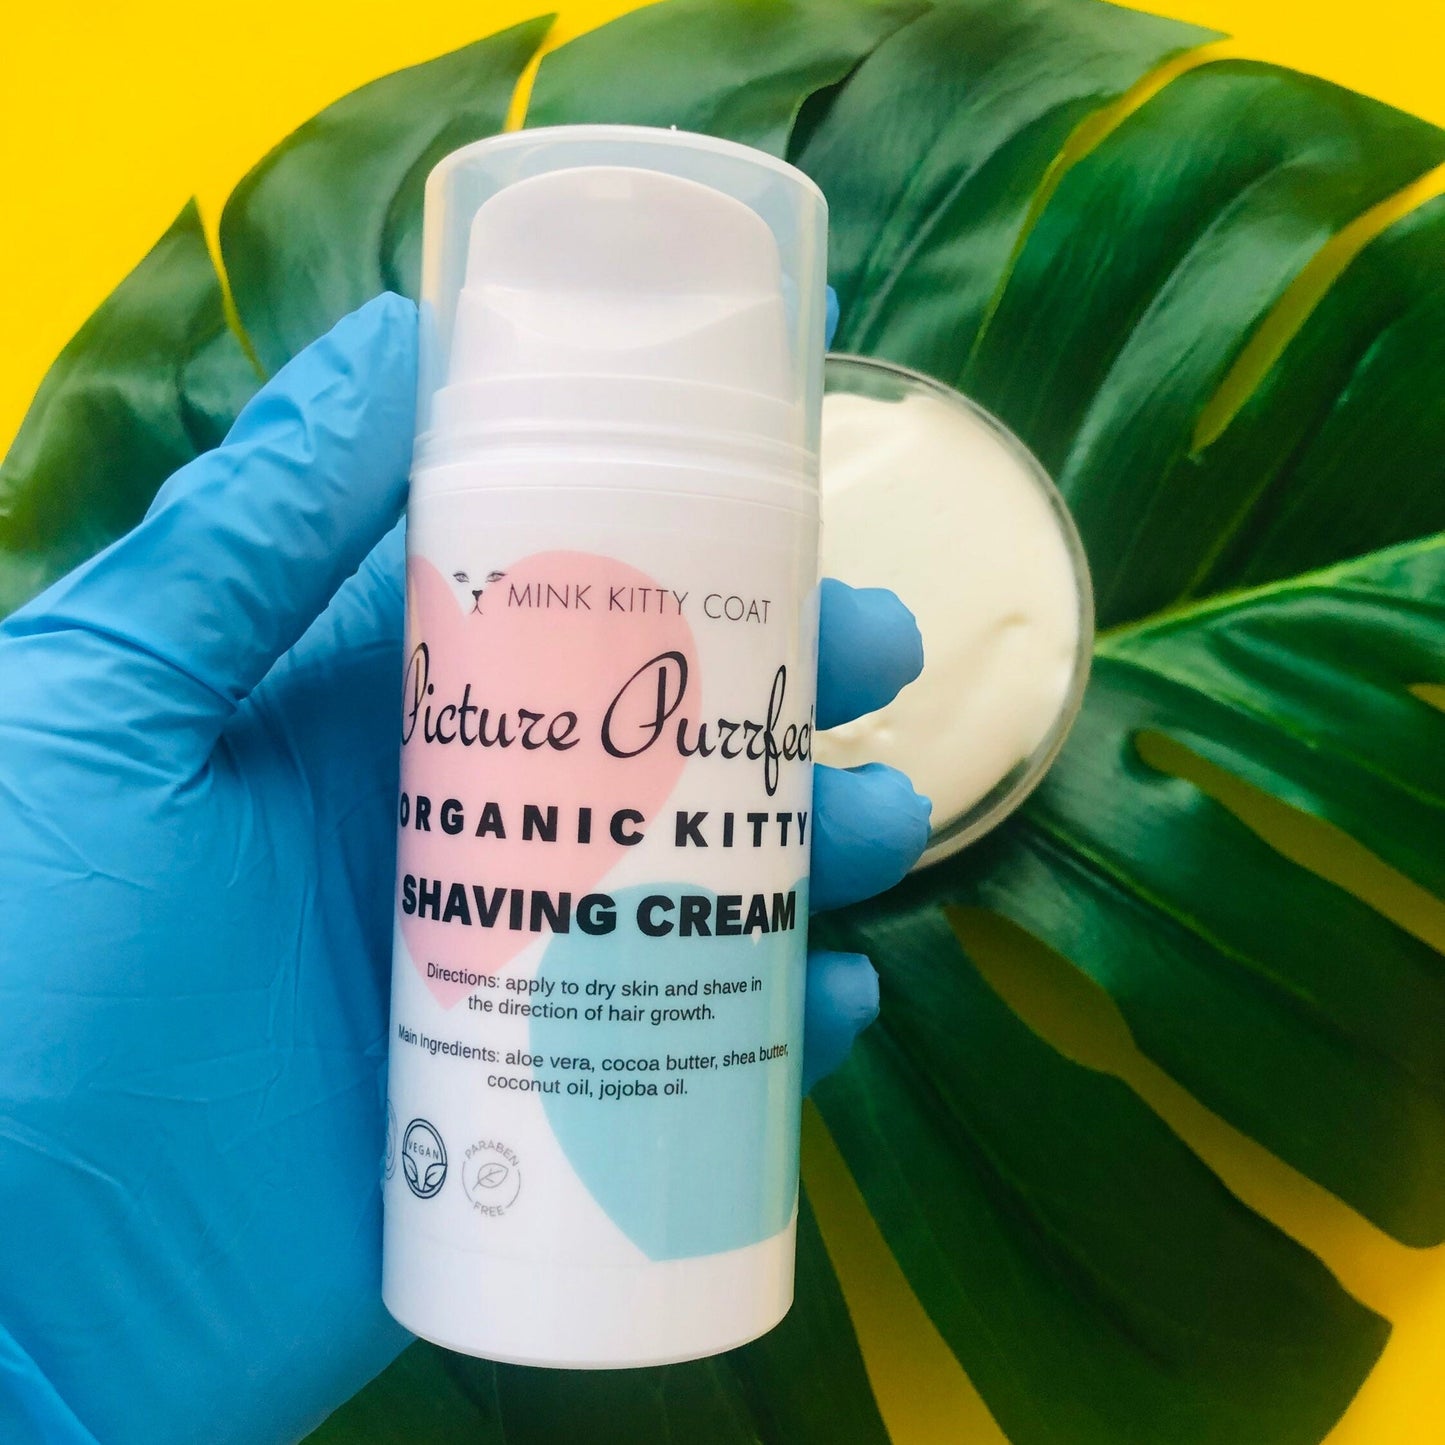 Picture Purrfect Organic Shaving Cream